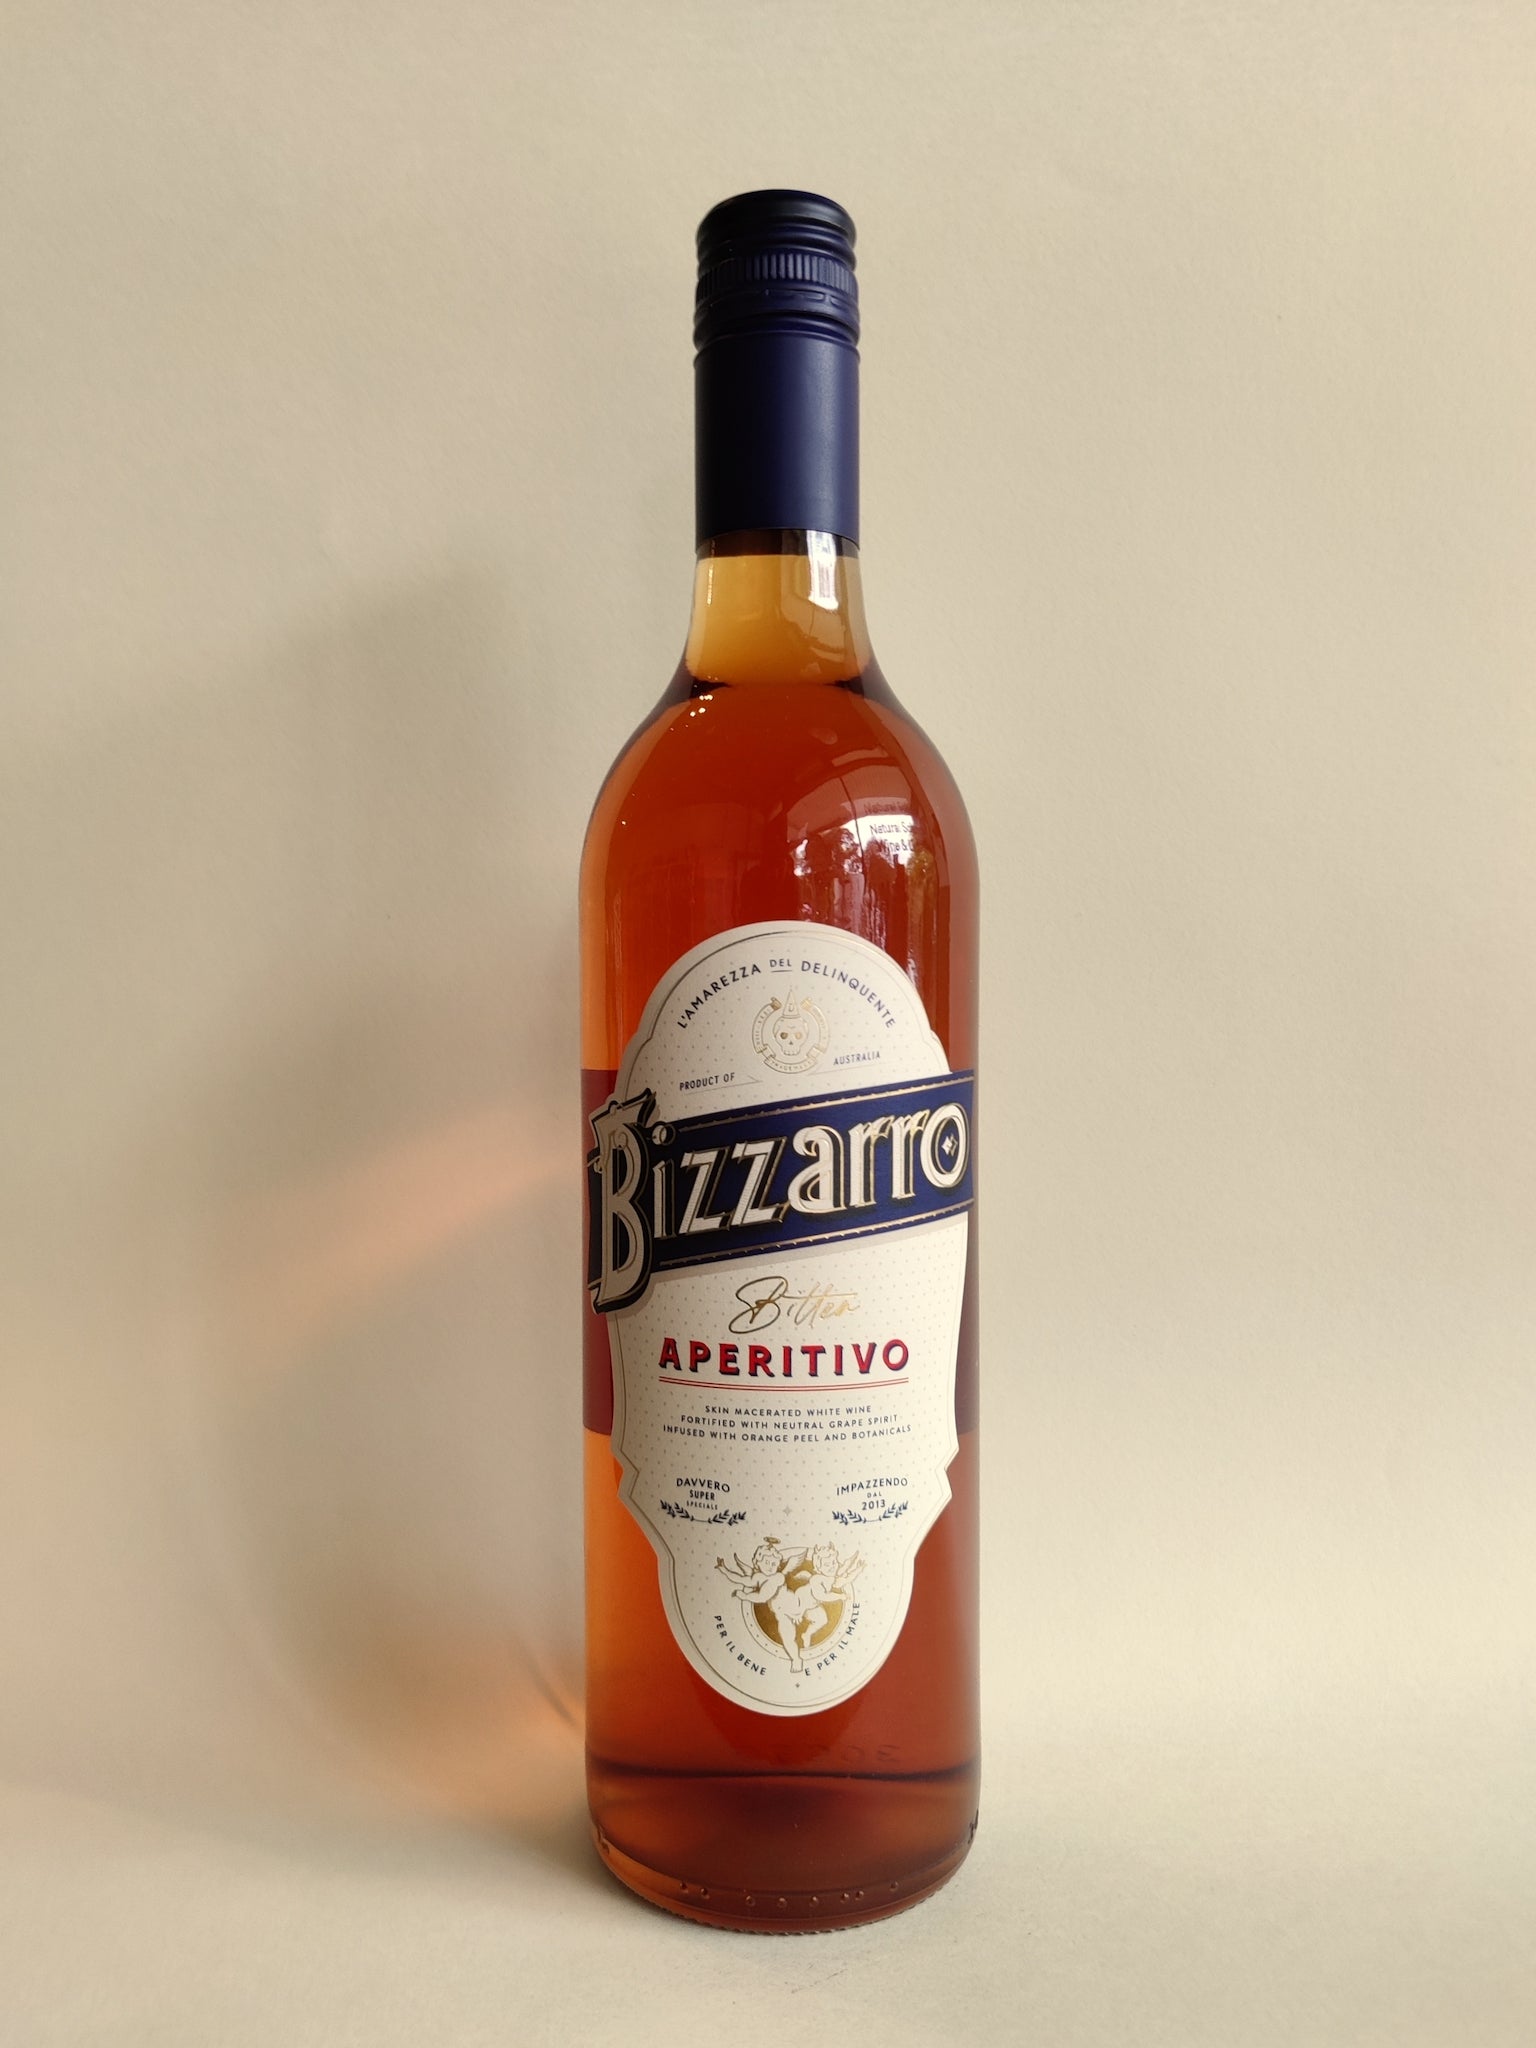 A bottle of Bizzarro Aperitivo Aperitif from the Riverland, South Australia.